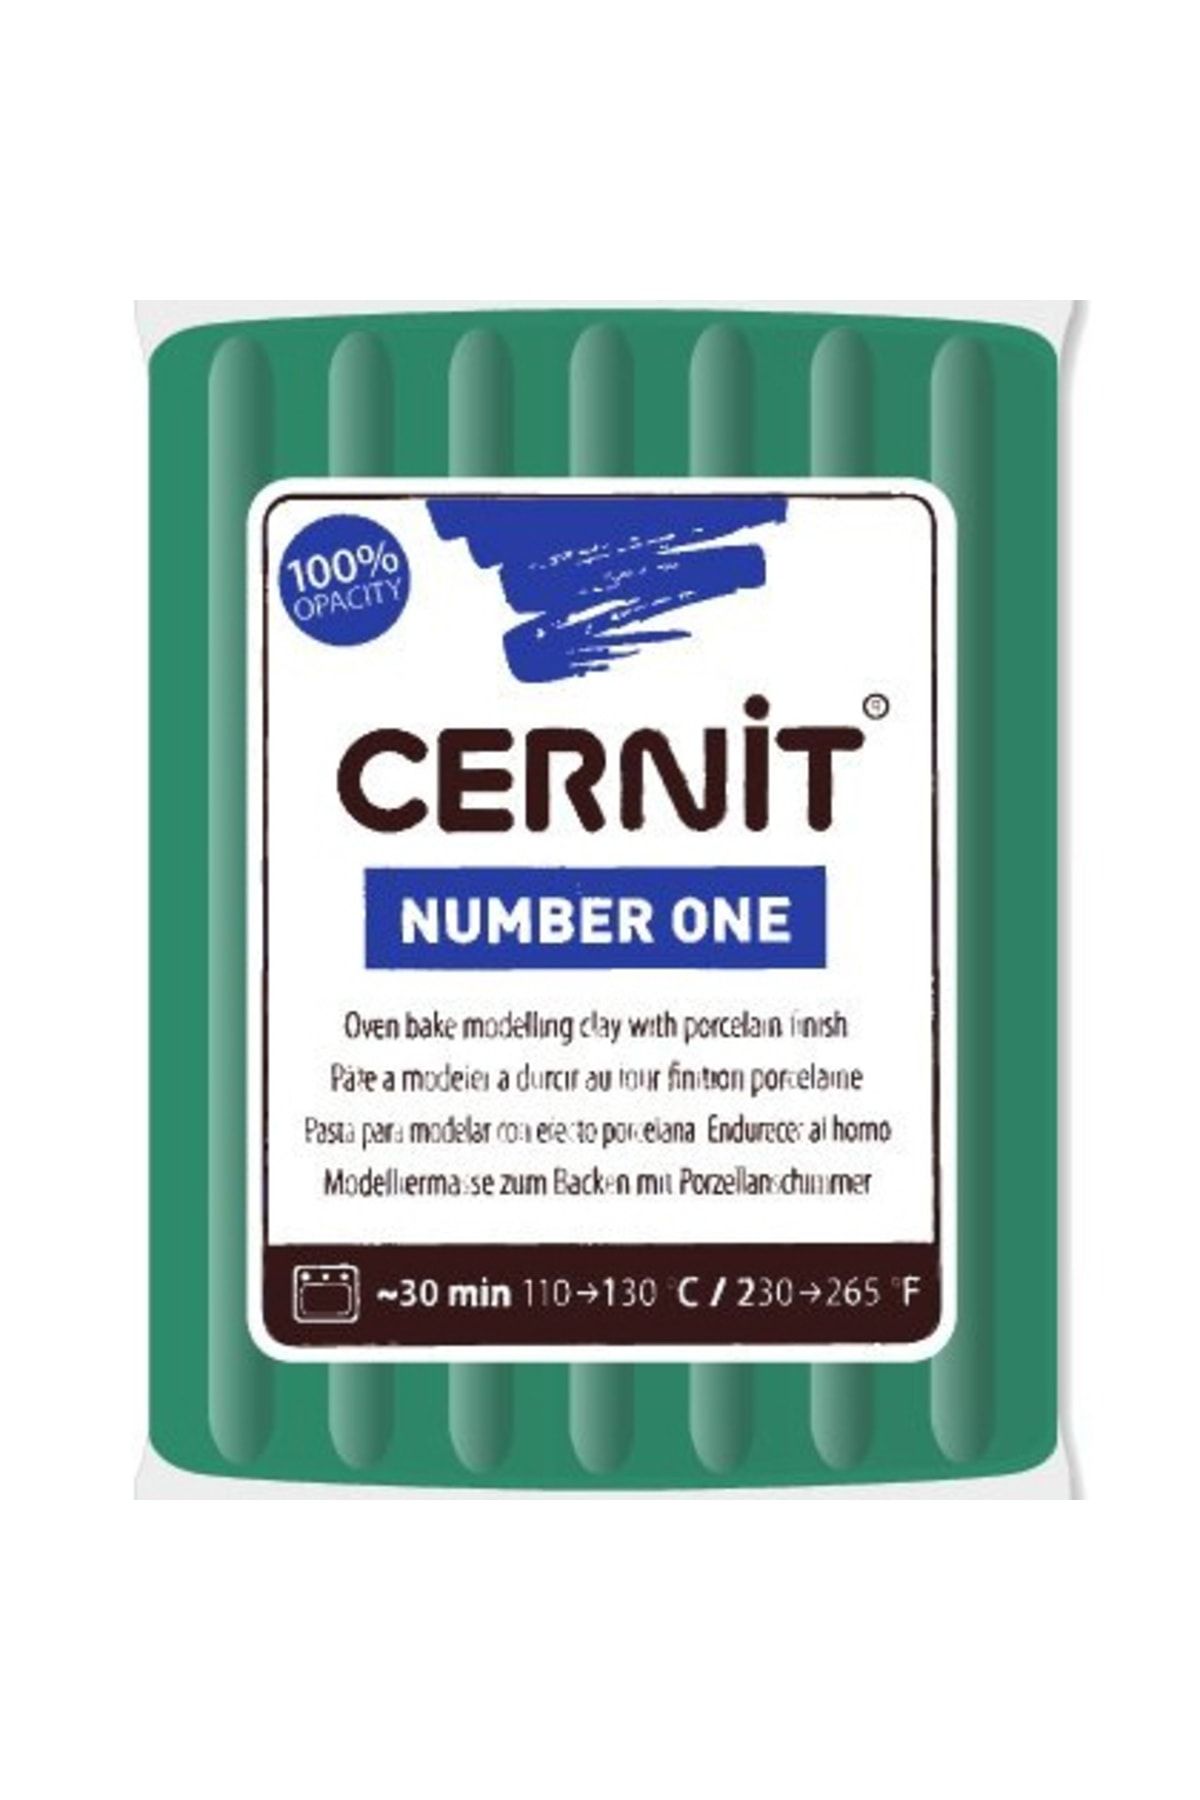 Cernit Number One Polimer Kil 600 Green